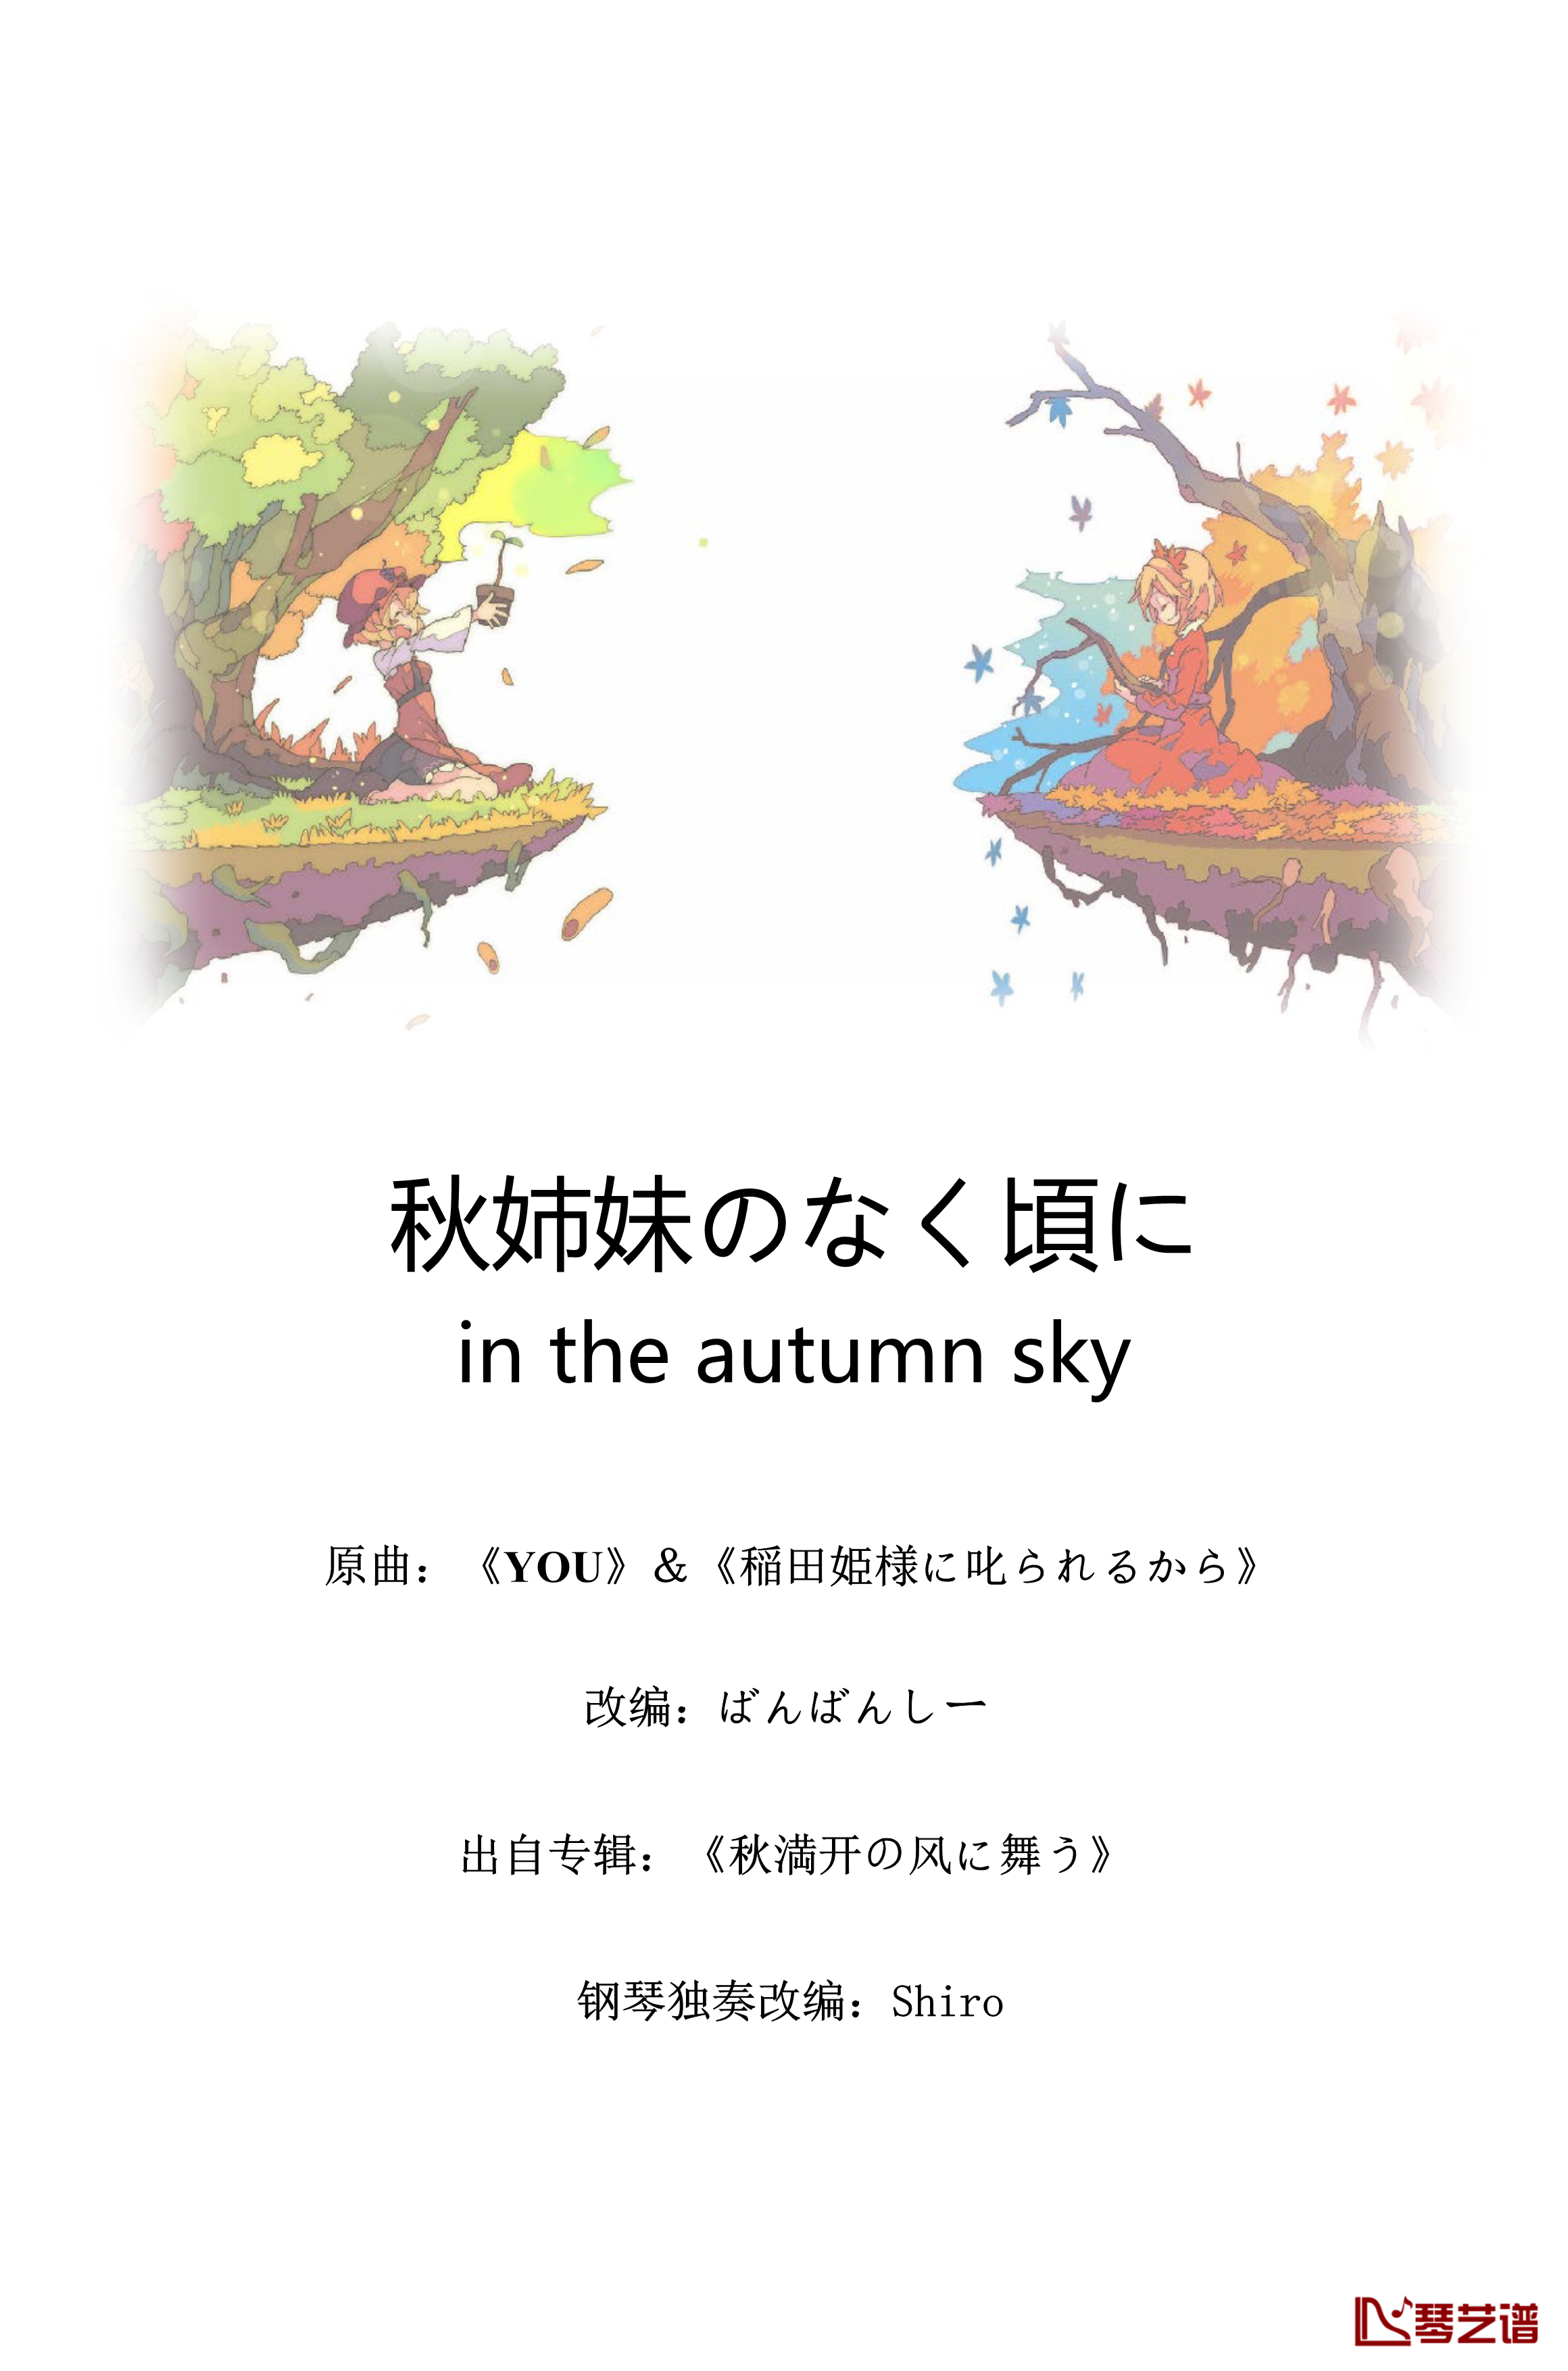 秋姉妹のなく頃に in the autumn sky钢琴谱-东方x寒蝉-东方project